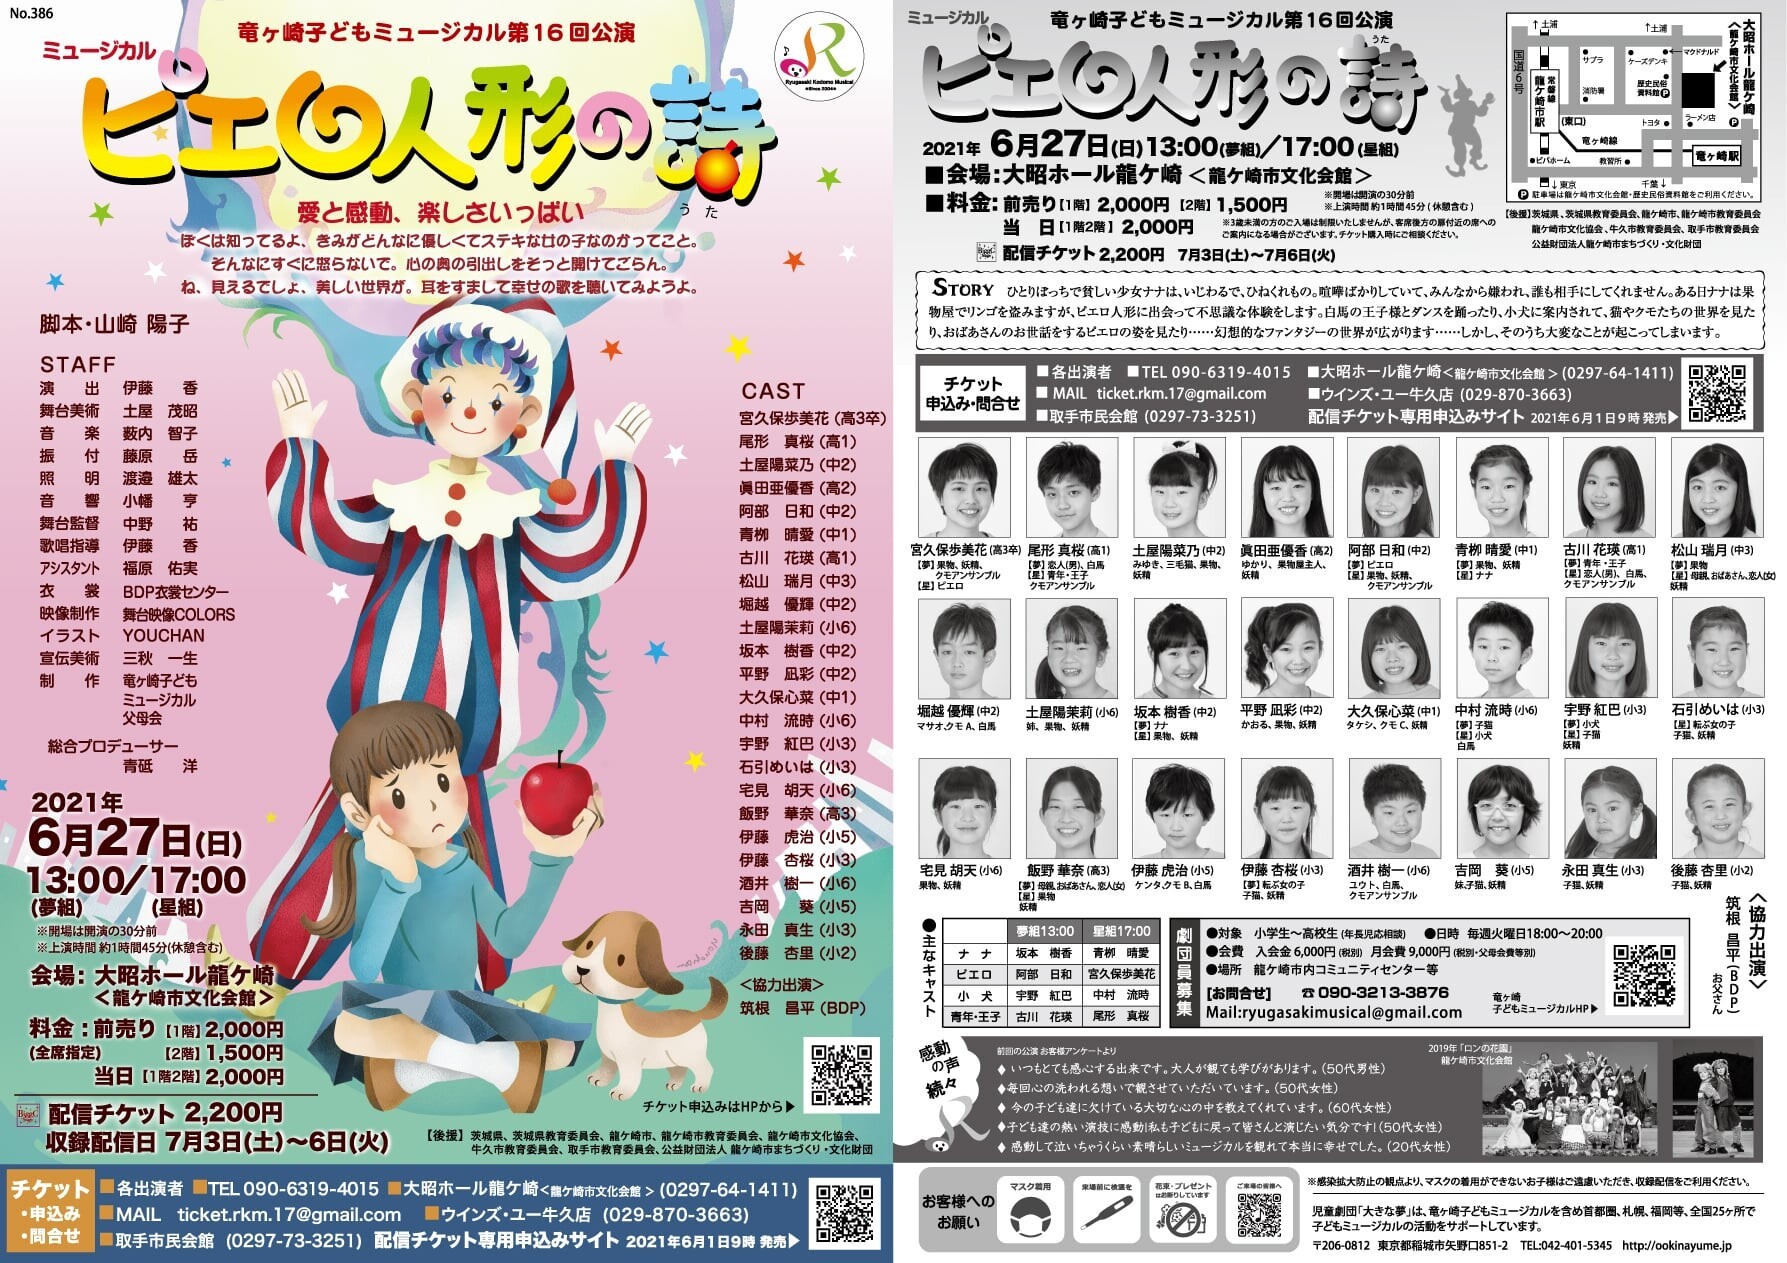 延期公演 竜ヶ崎子どもミュージカル第16回公演 ピエロ人形の詩 Zaiko